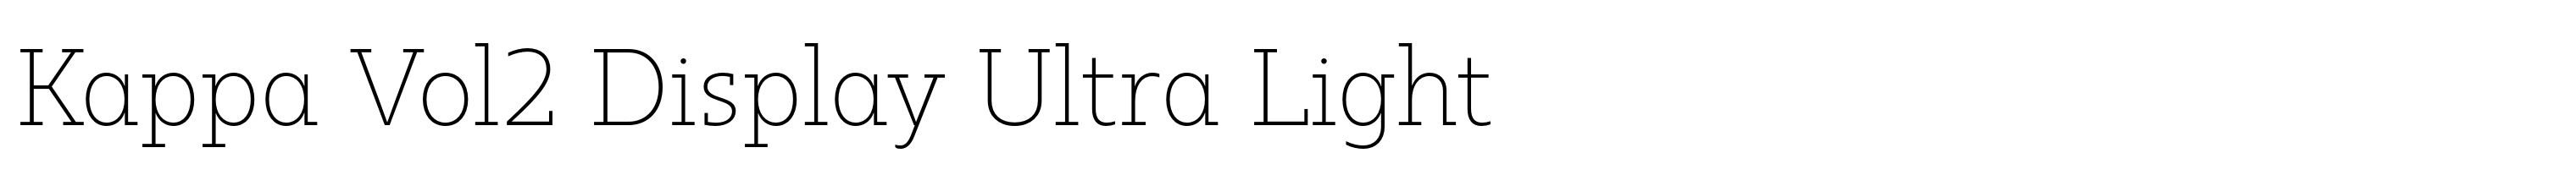 Kappa Vol2 Display Ultra Light